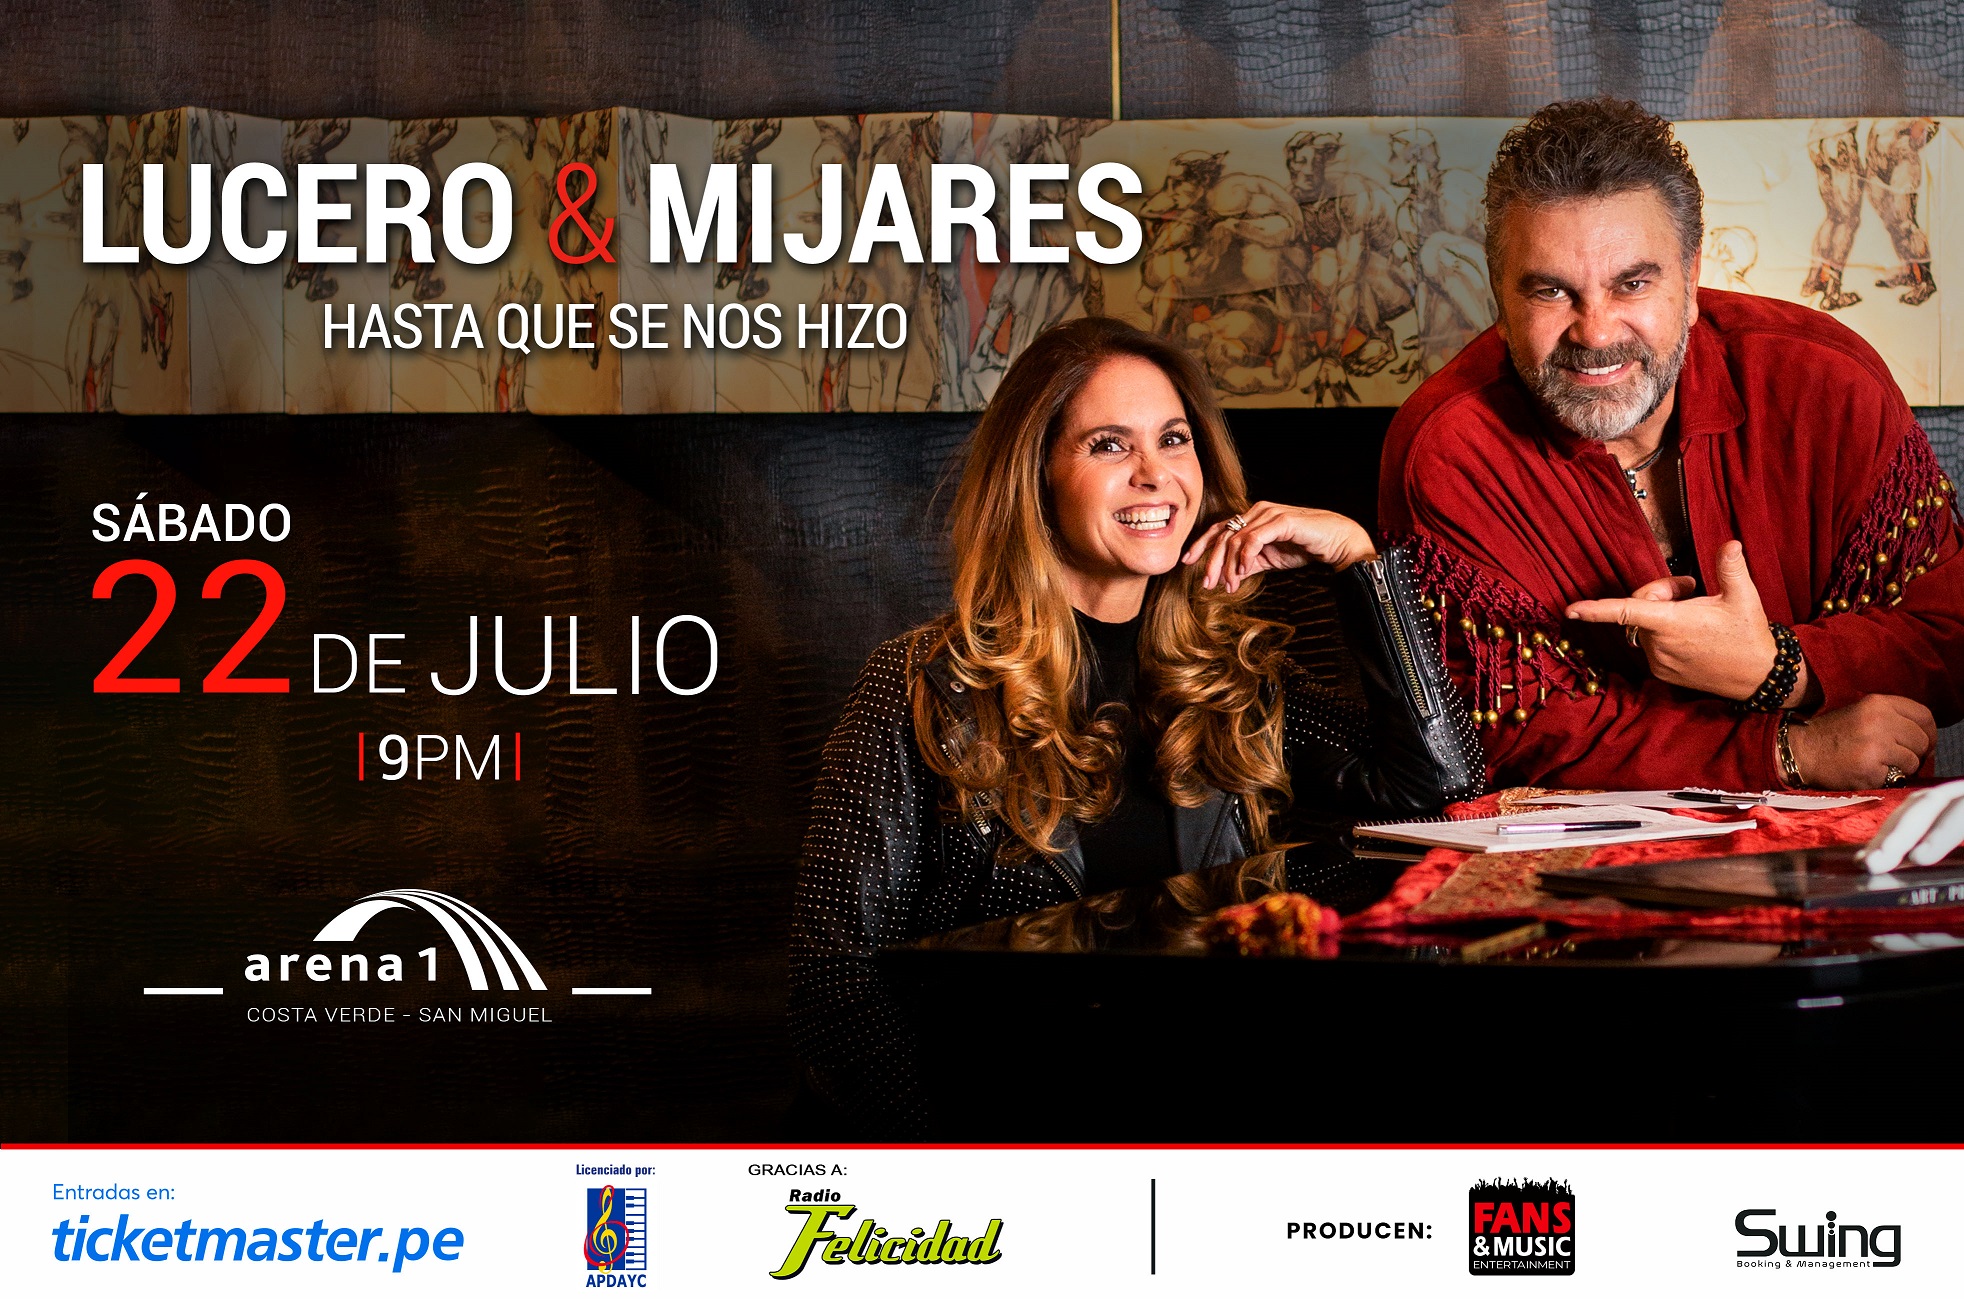 Fecha para el concierto de Lucero y Mijares en Perú.